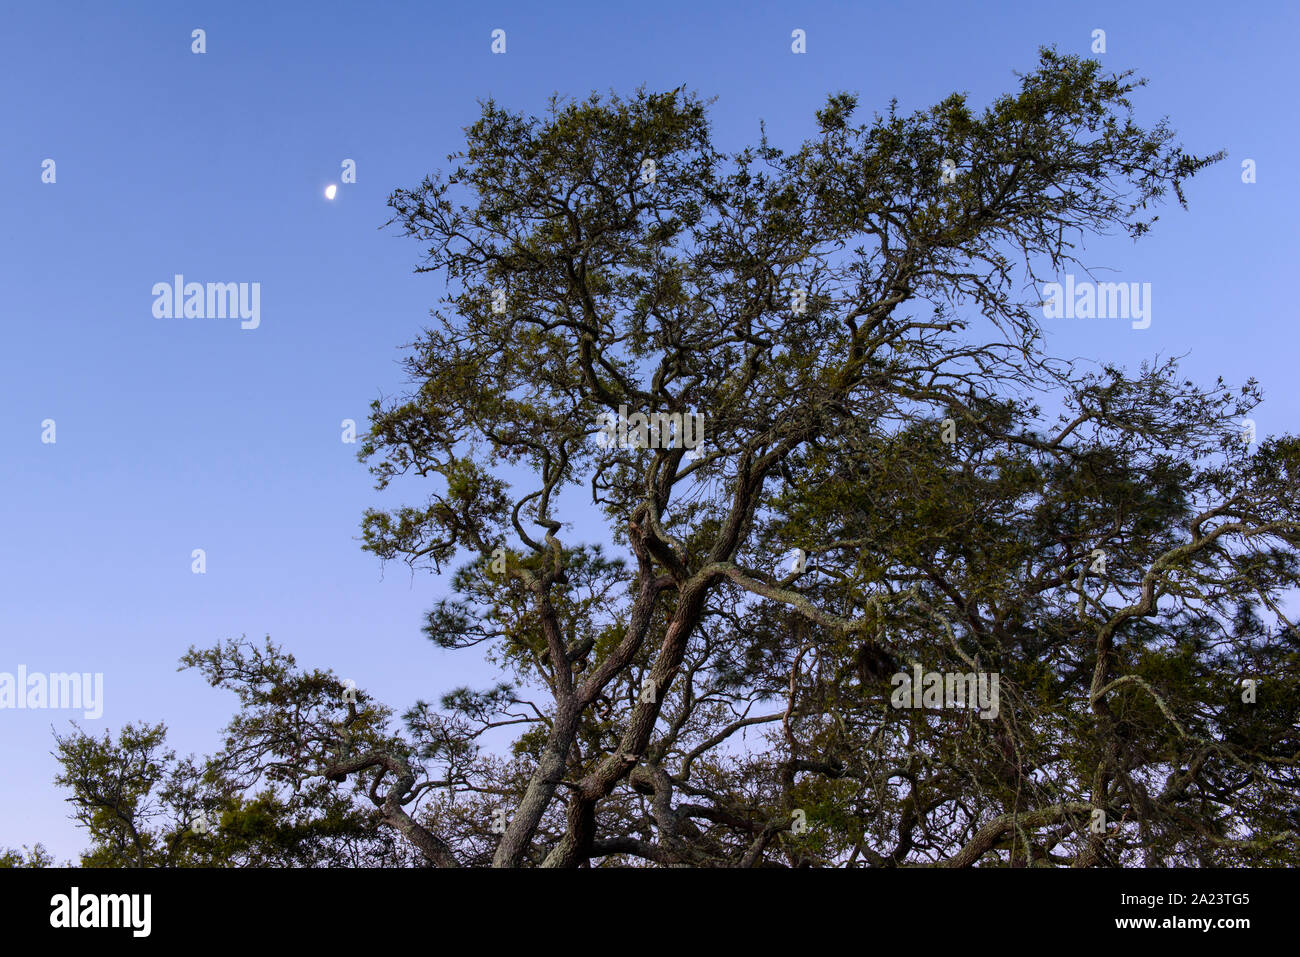 Oak tree and setting moon, St. Marks National Wildlife Refuge, Florida, USA Stock Photo